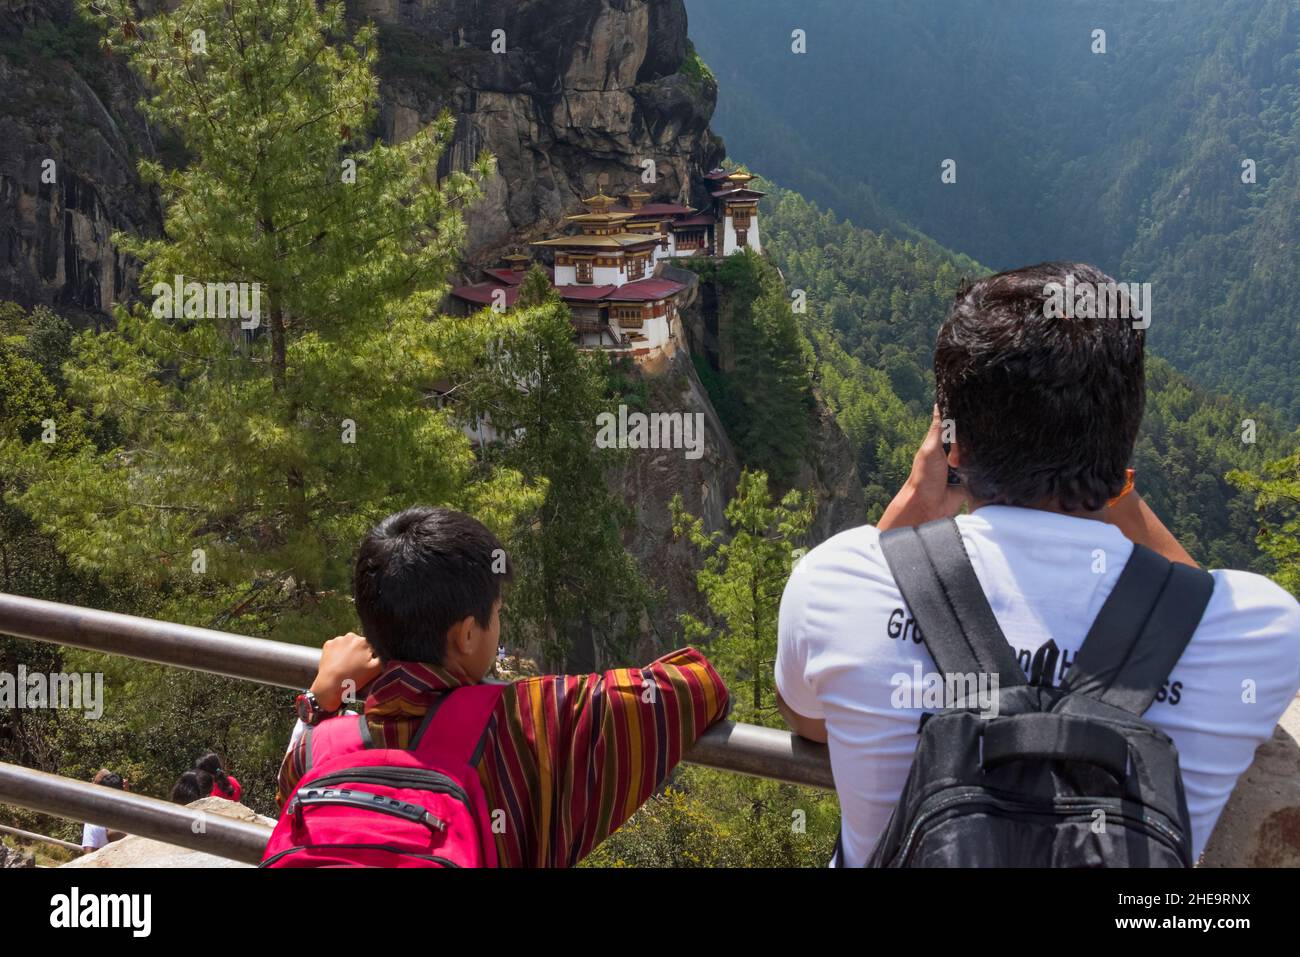 Tourists photographing Paro Taktsang (also known as Tiger's Nest), Paro, Bhutan Stock Photo